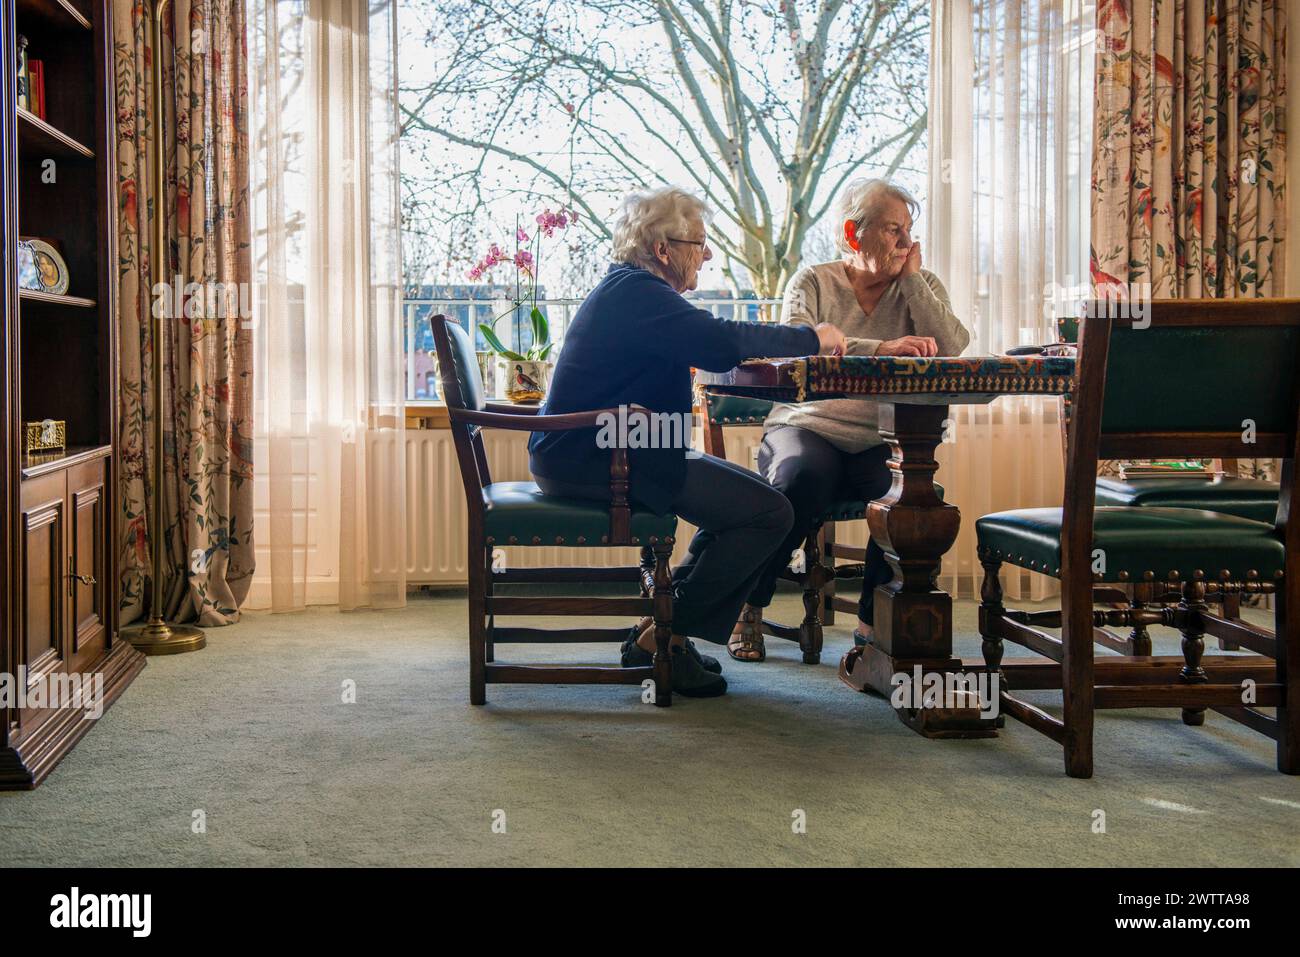 Ein älteres Ehepaar hat sich an einem durchdachten Schachspiel am Fenster beteiligt. Stockfoto